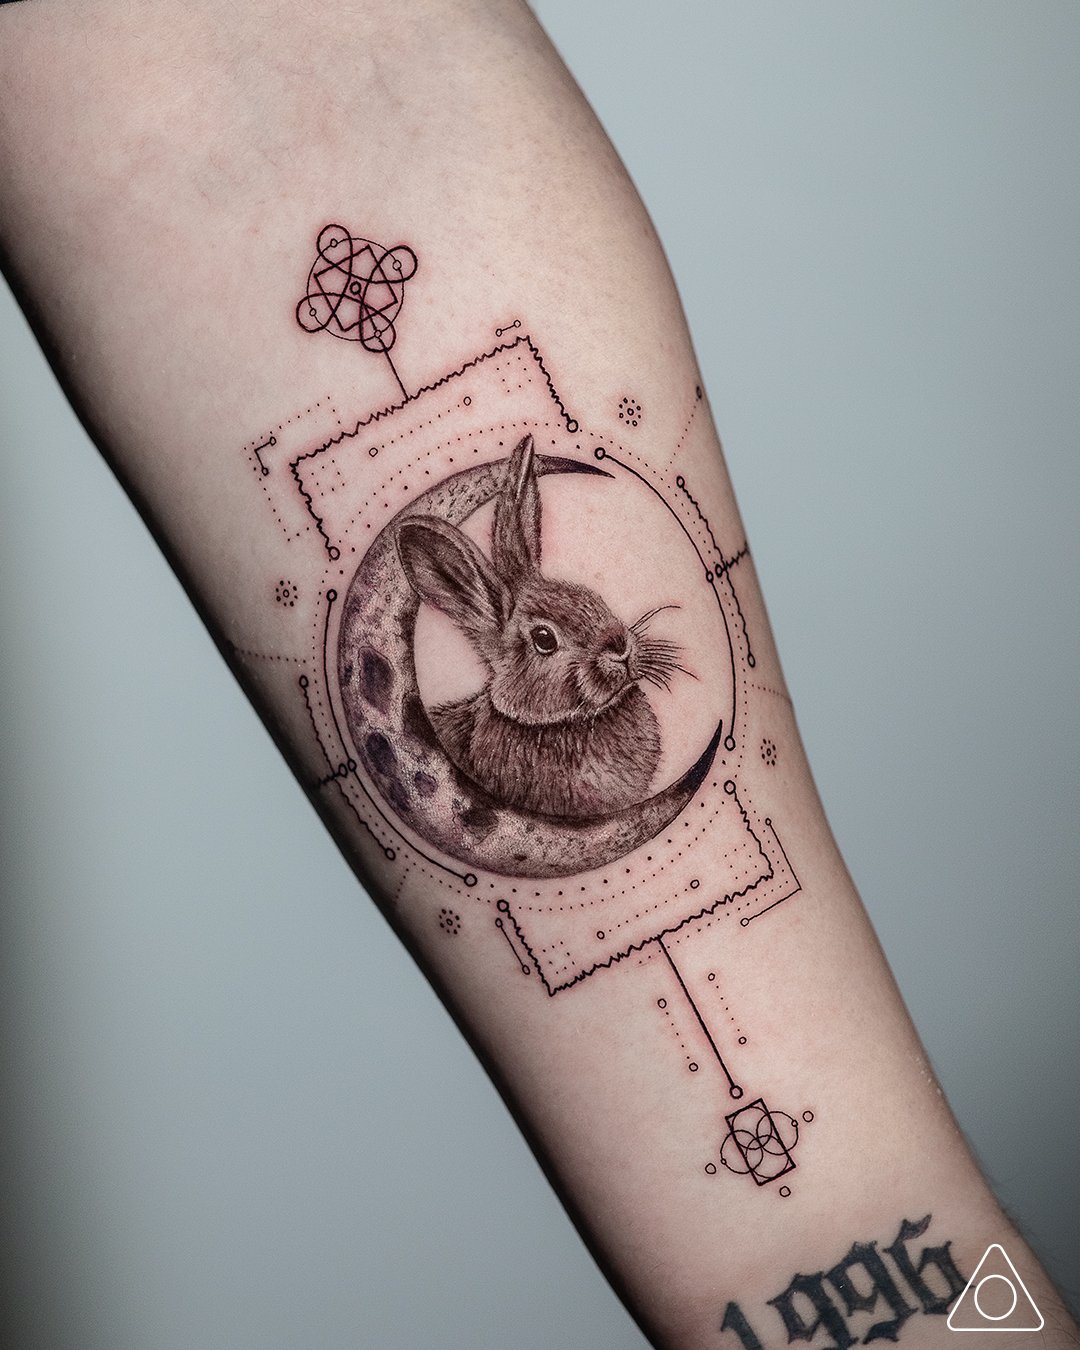 Tattoo uploaded by Tattoodo • Cute bb bunny tattoo by Minnie #Minnie  #petportraittattoo #fineline #minimal #realism #realistic #illustrative # bunny #rabbit #cute #blackandgrey #small #tattoooftheday • Tattoodo